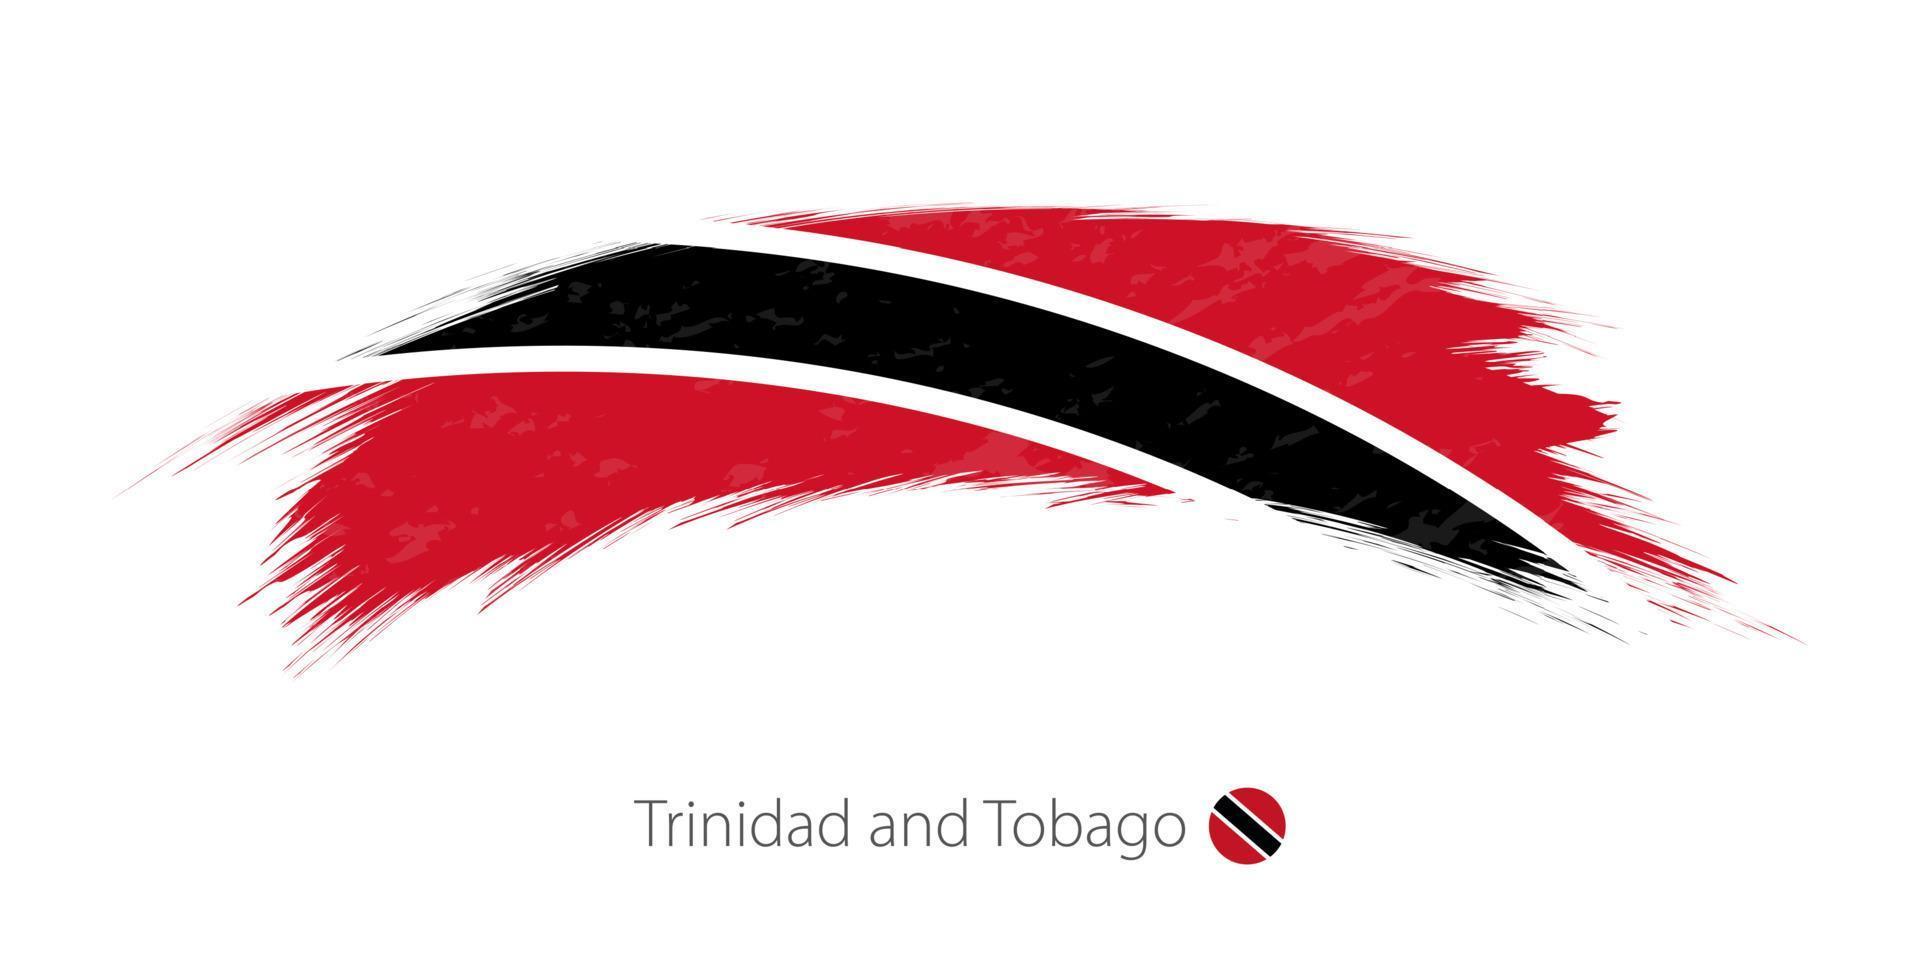 drapeau de trinité-et-tobago en coup de pinceau grunge arrondi. vecteur